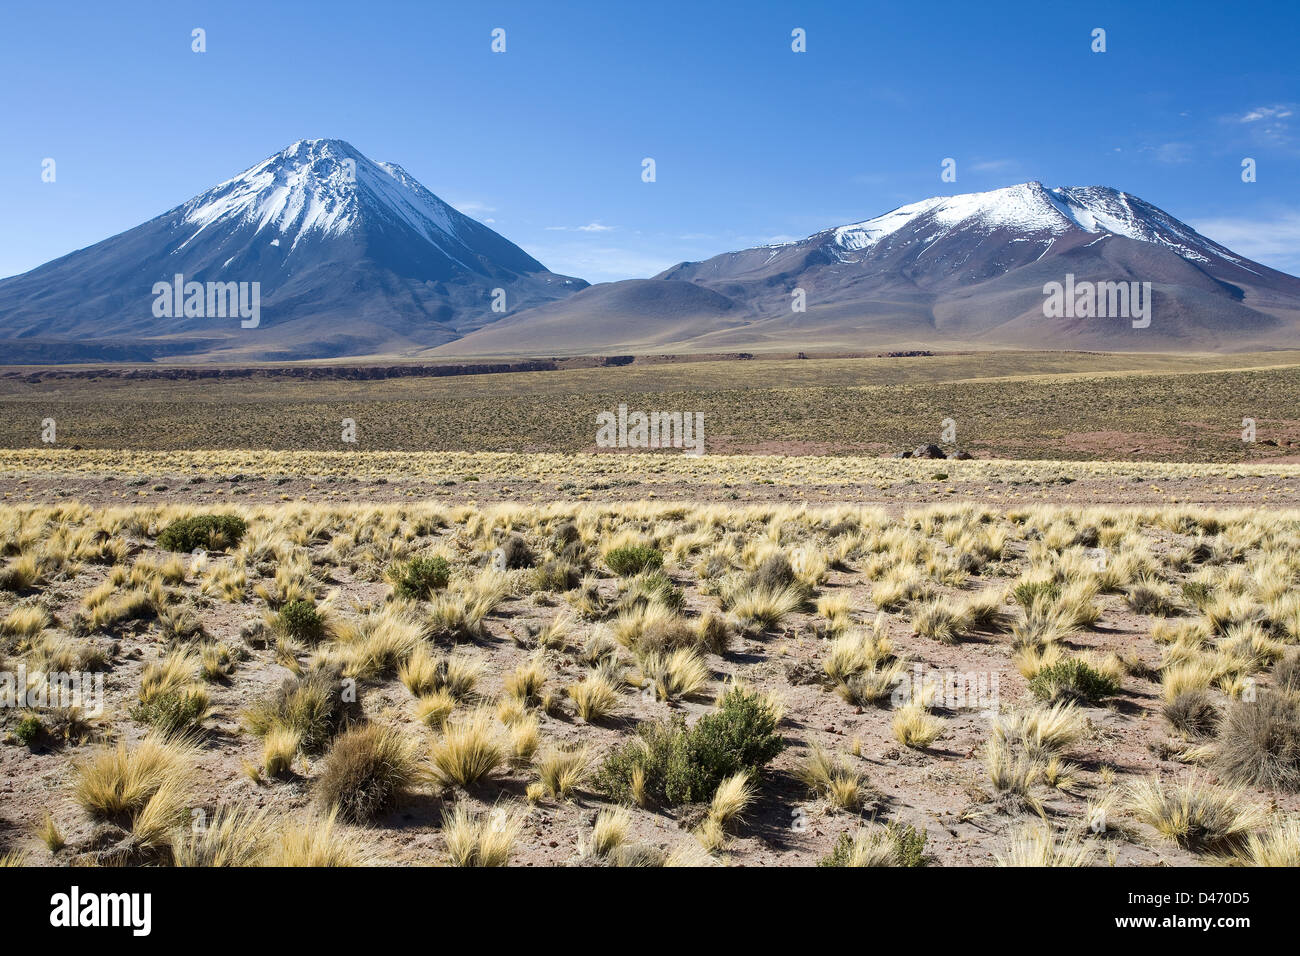 Mountain pass Paso de Jama with volcanoes near San Pedro de Atacama, Chile Stock Photo